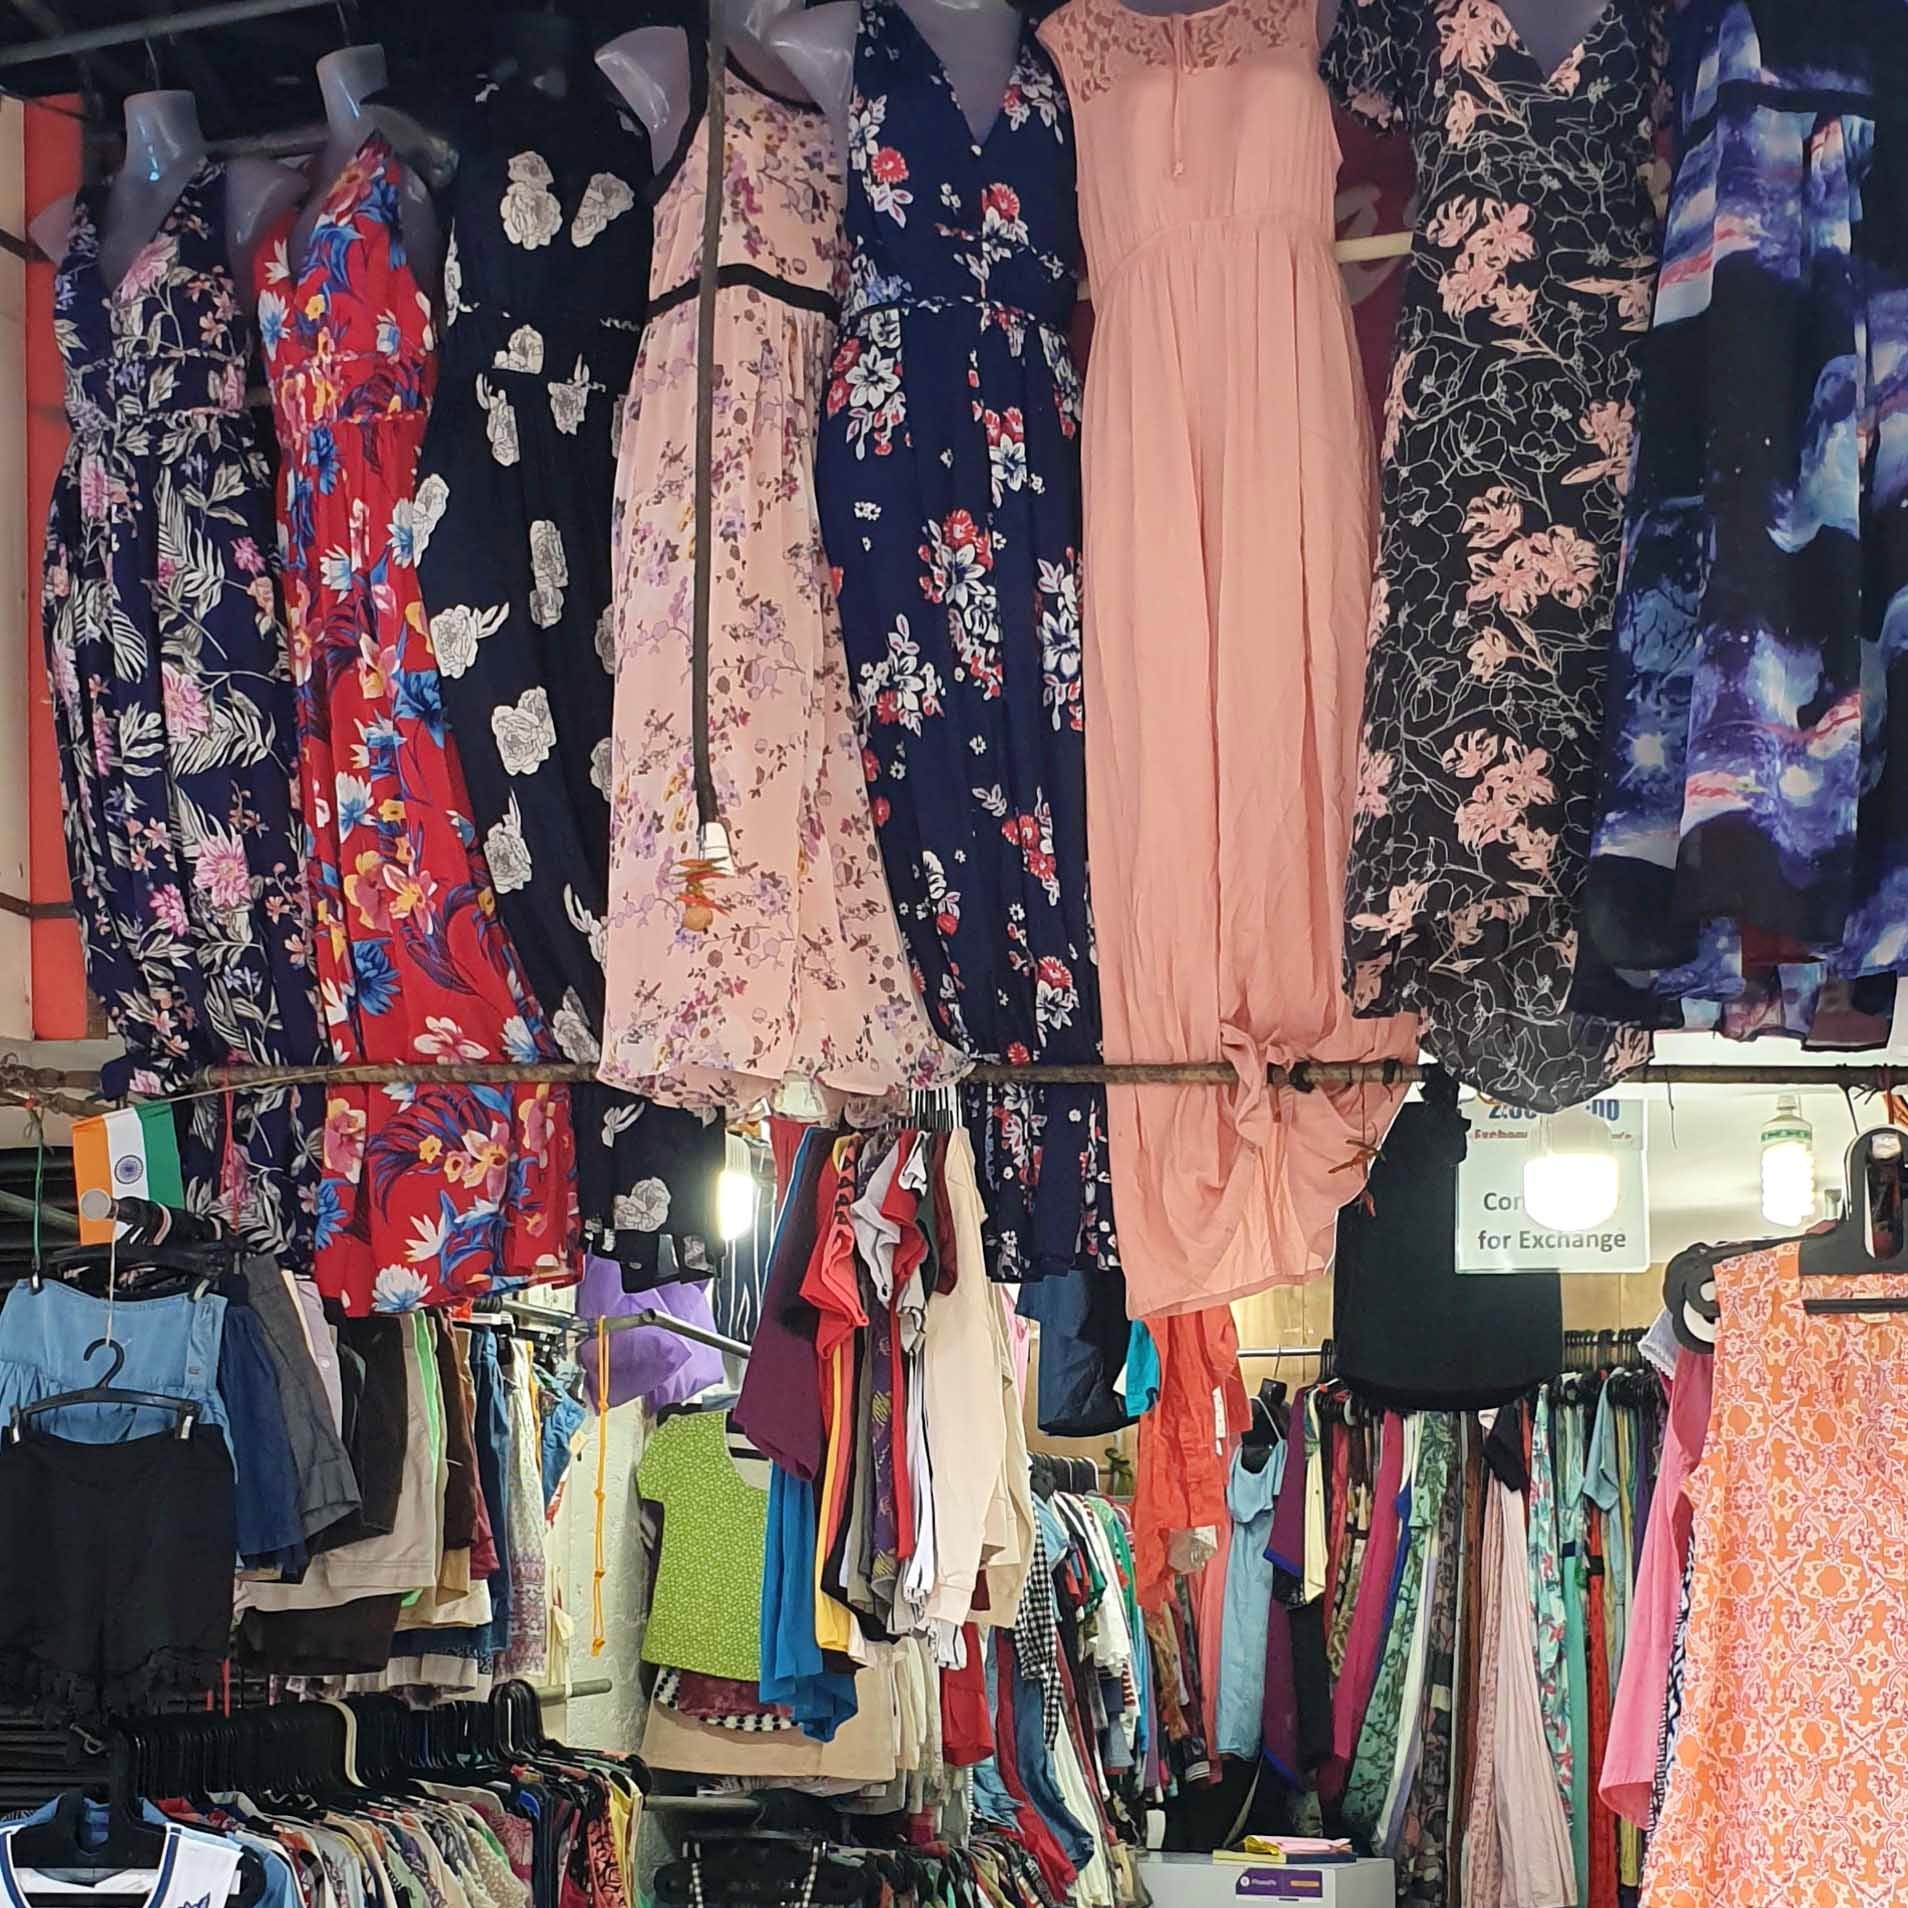 Clothing,Human settlement,Boutique,Bazaar,Textile,Room,City,Market